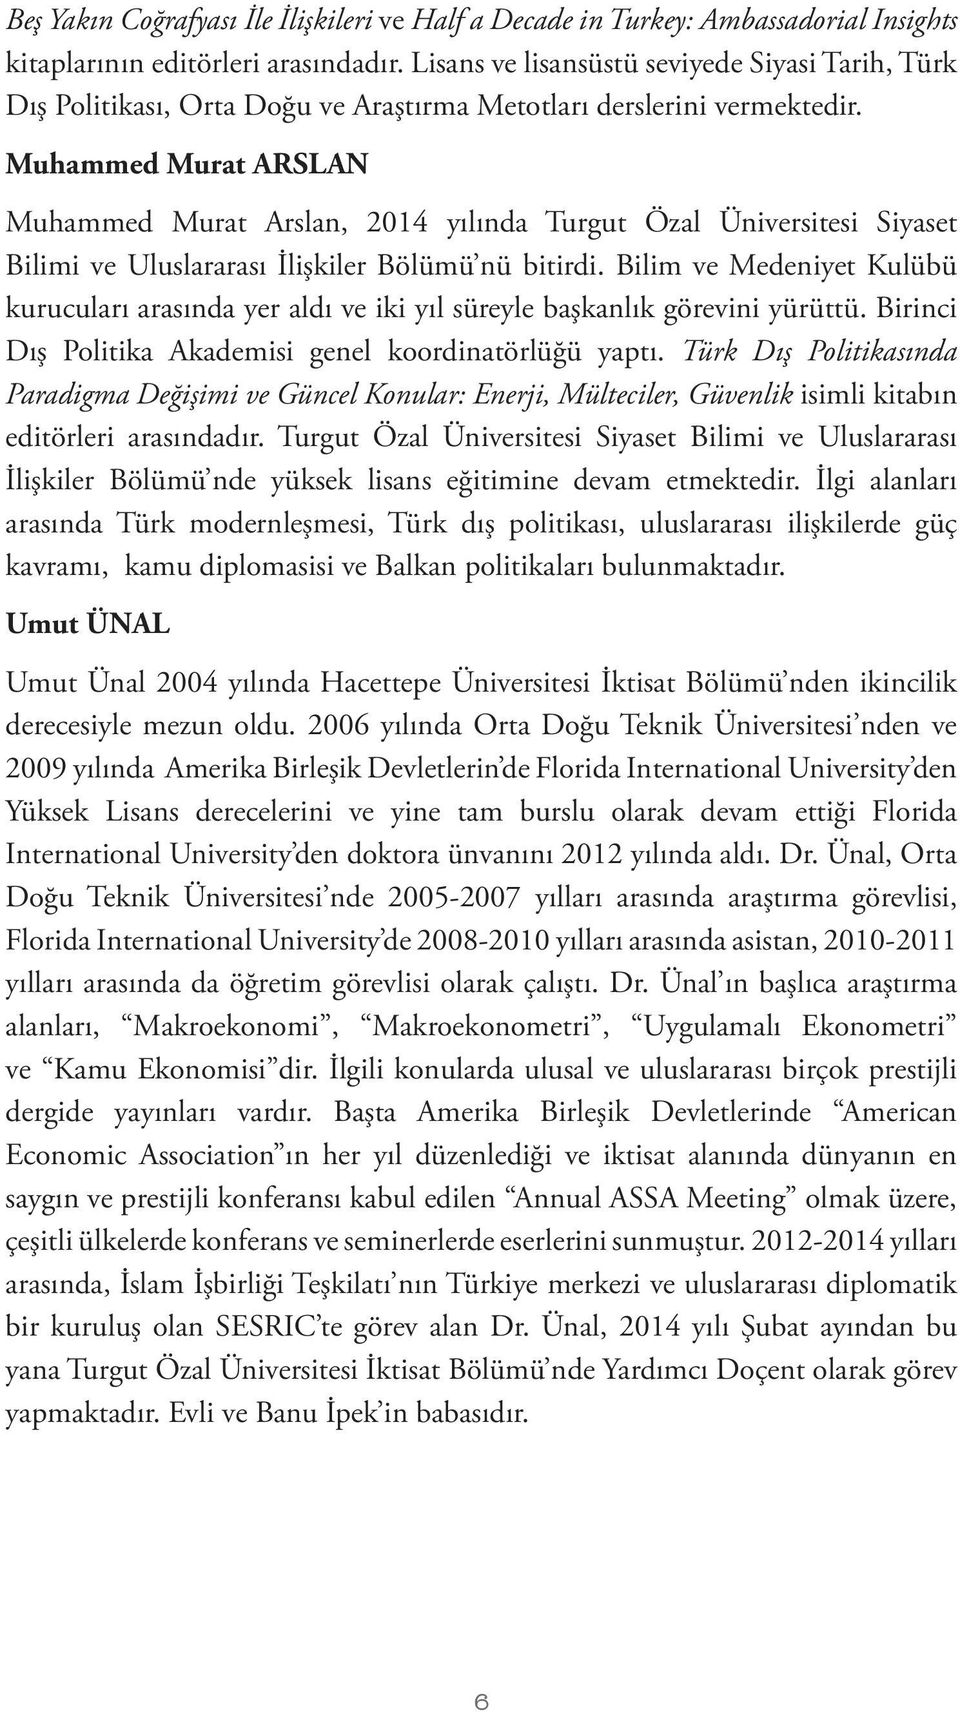 Muhammed Murat ARSLAN Muhammed Murat Arslan, 2014 yılında Turgut Özal Üniversitesi Siyaset Bilimi ve Uluslararası İlişkiler Bölümü nü bitirdi.